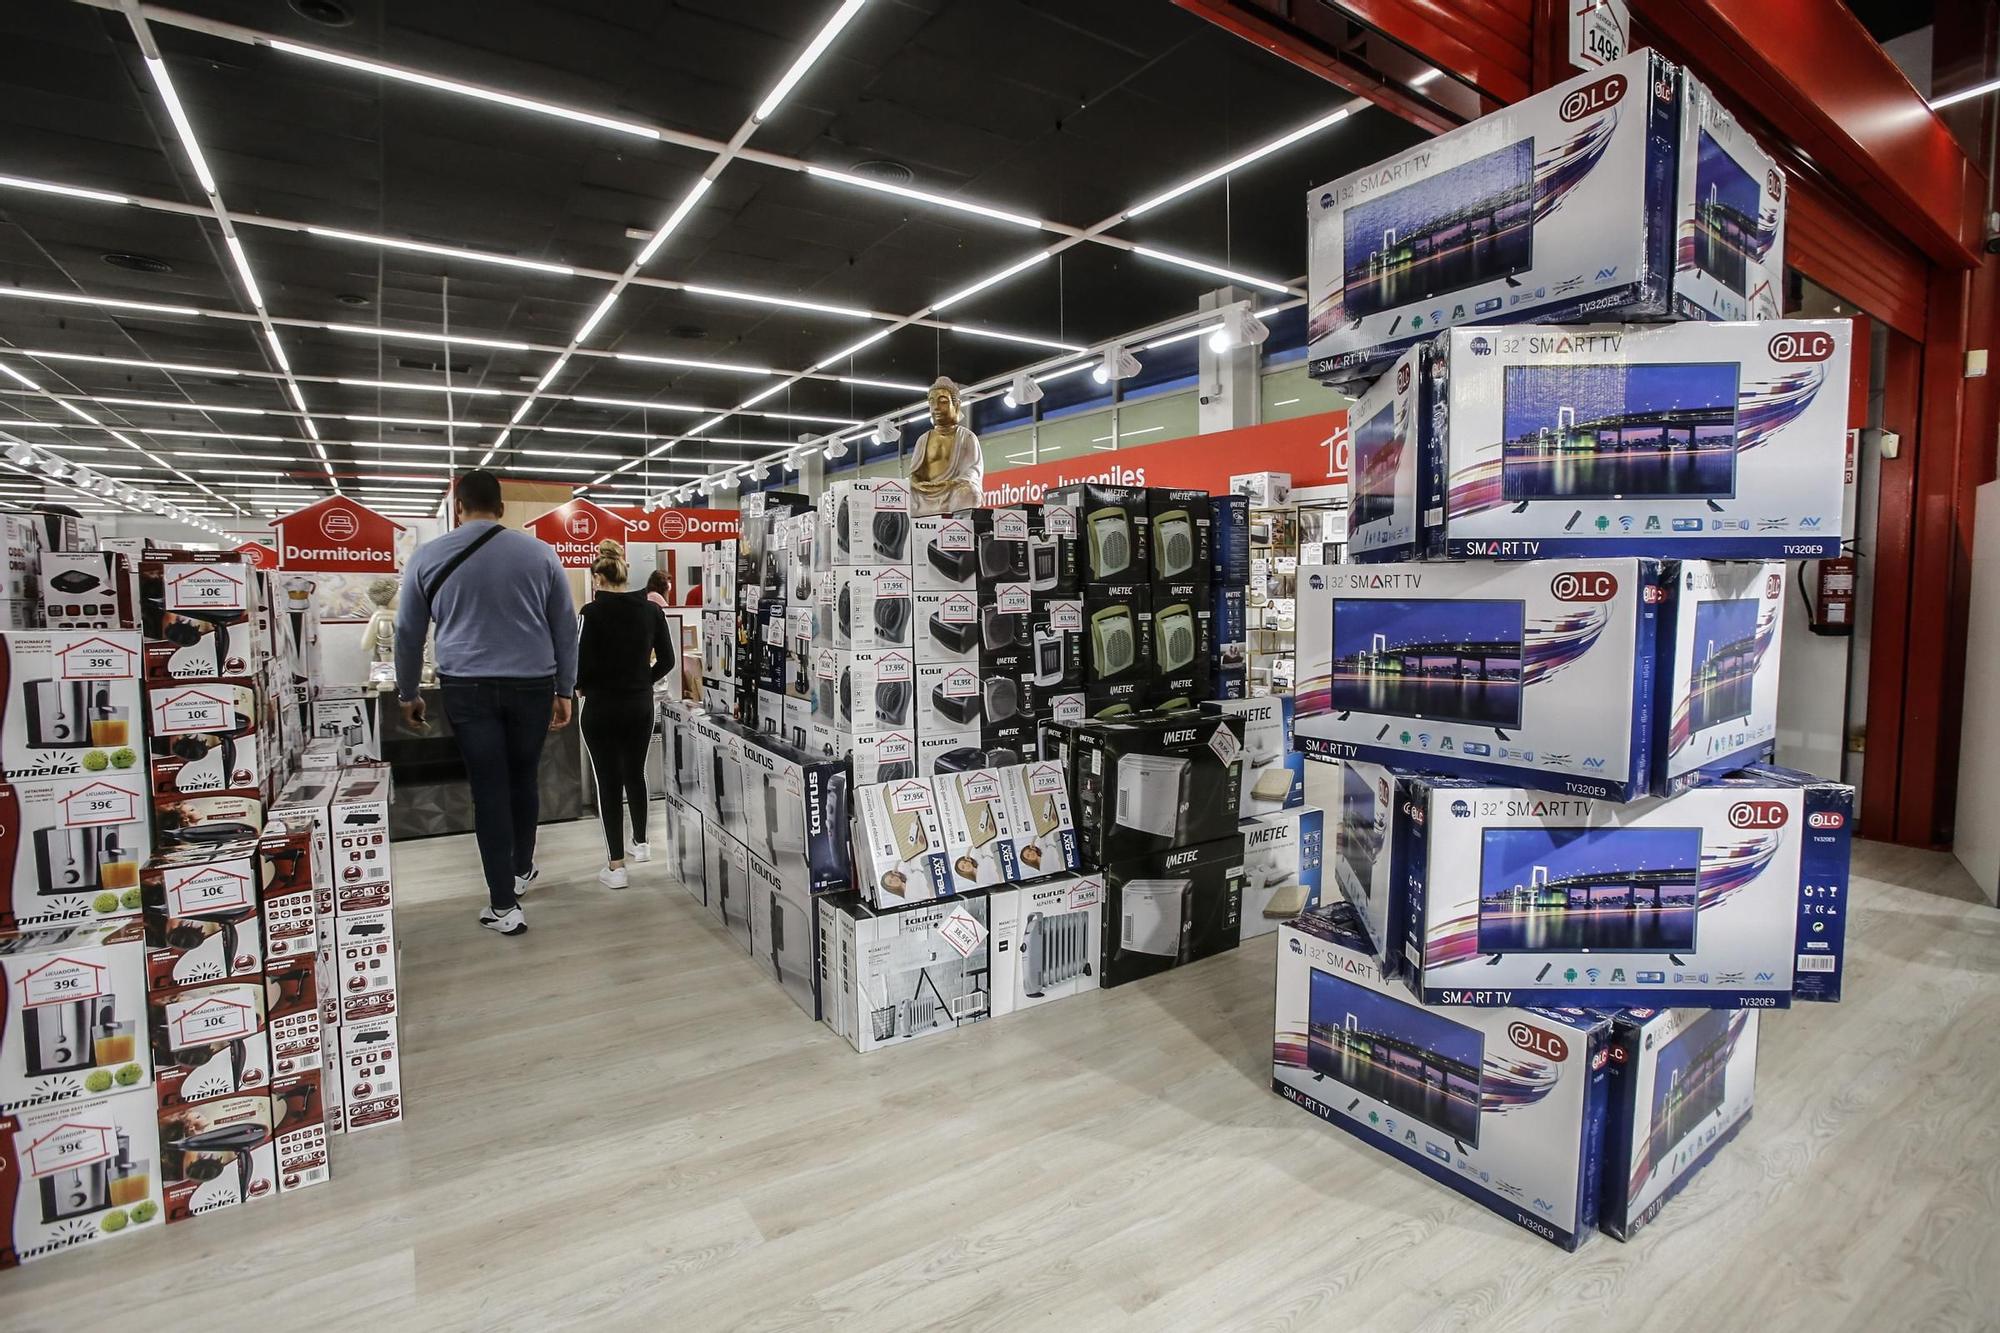 Muebles y decoración: Castor Home abre una nueva tienda en Alicante